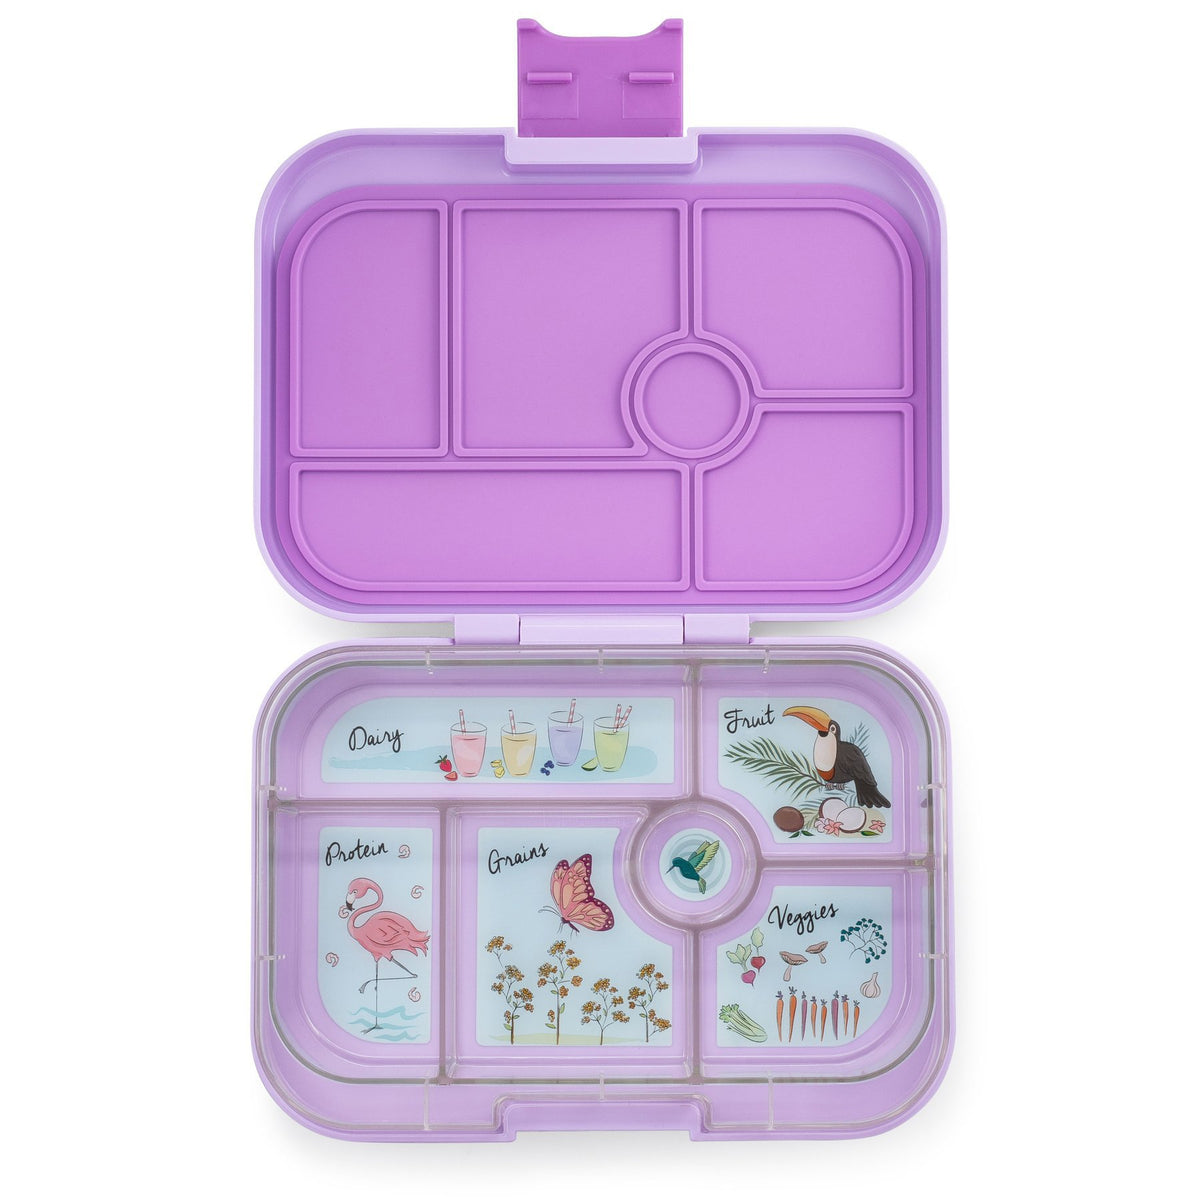 yumbox-original-lila-purple-6-compartment-lunch-box- (1)